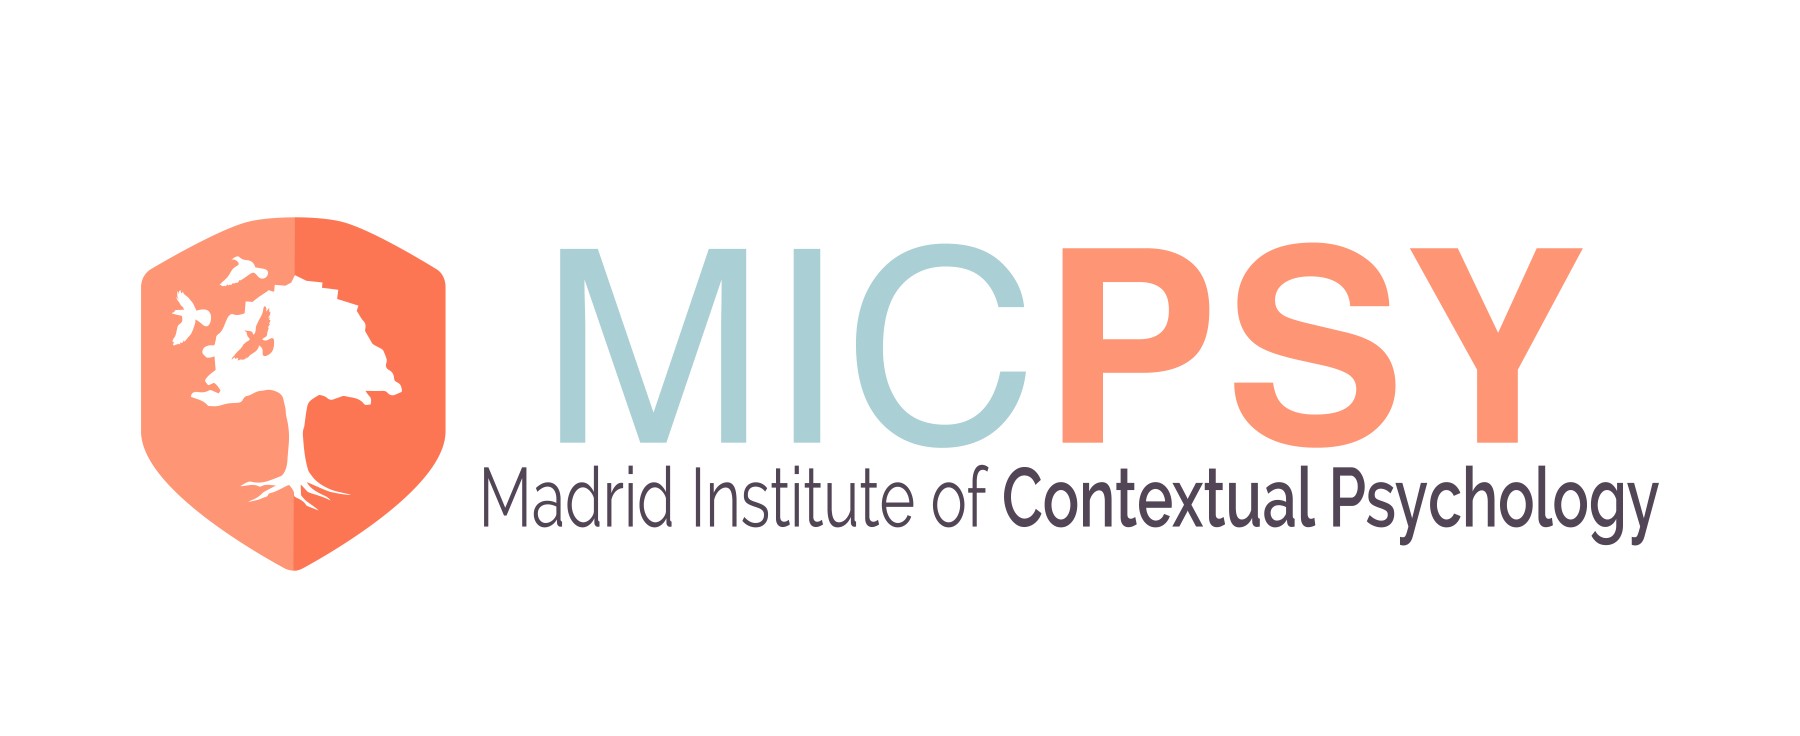 Máster en Terapias Contextuales - Instituto de Psicología Contextual Madrid - MICPSY